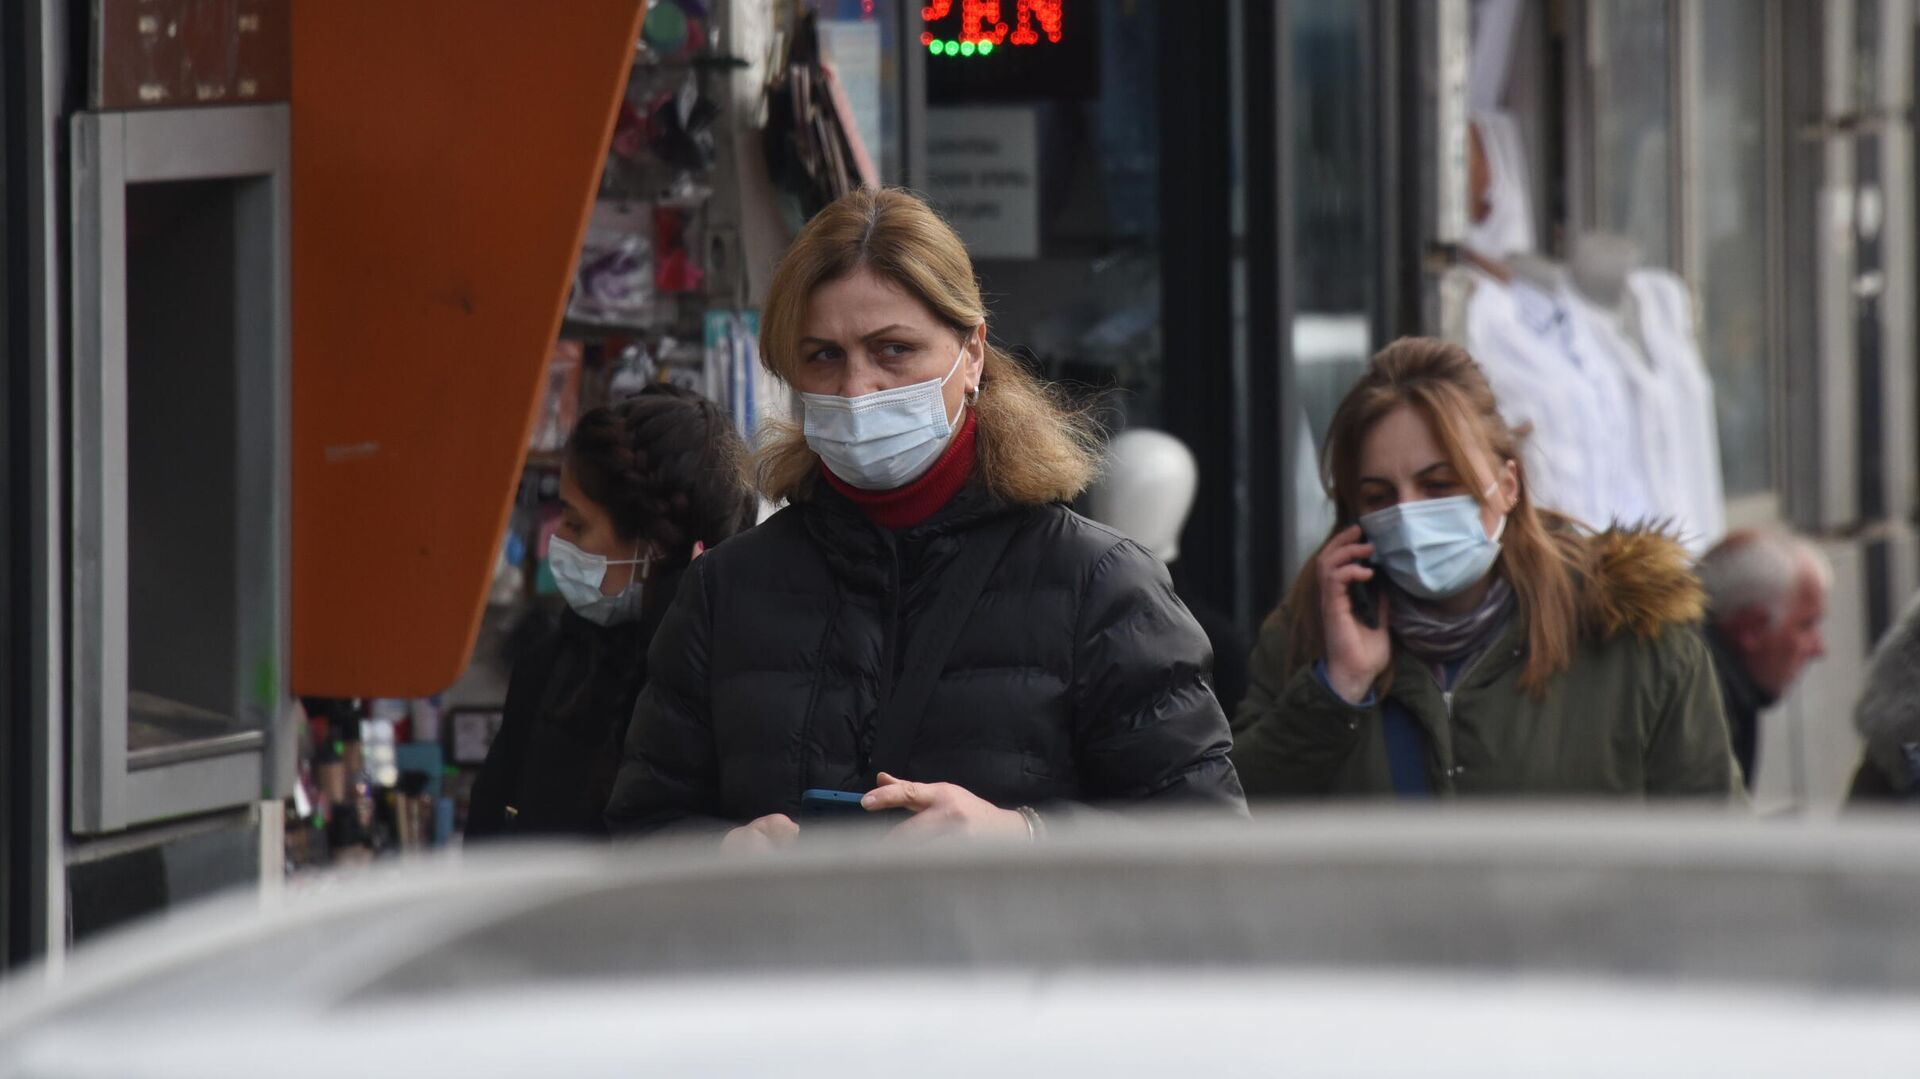 Эпидемия коронавируса, прохожие на улицах в масках  - Sputnik Грузия, 1920, 01.03.2022